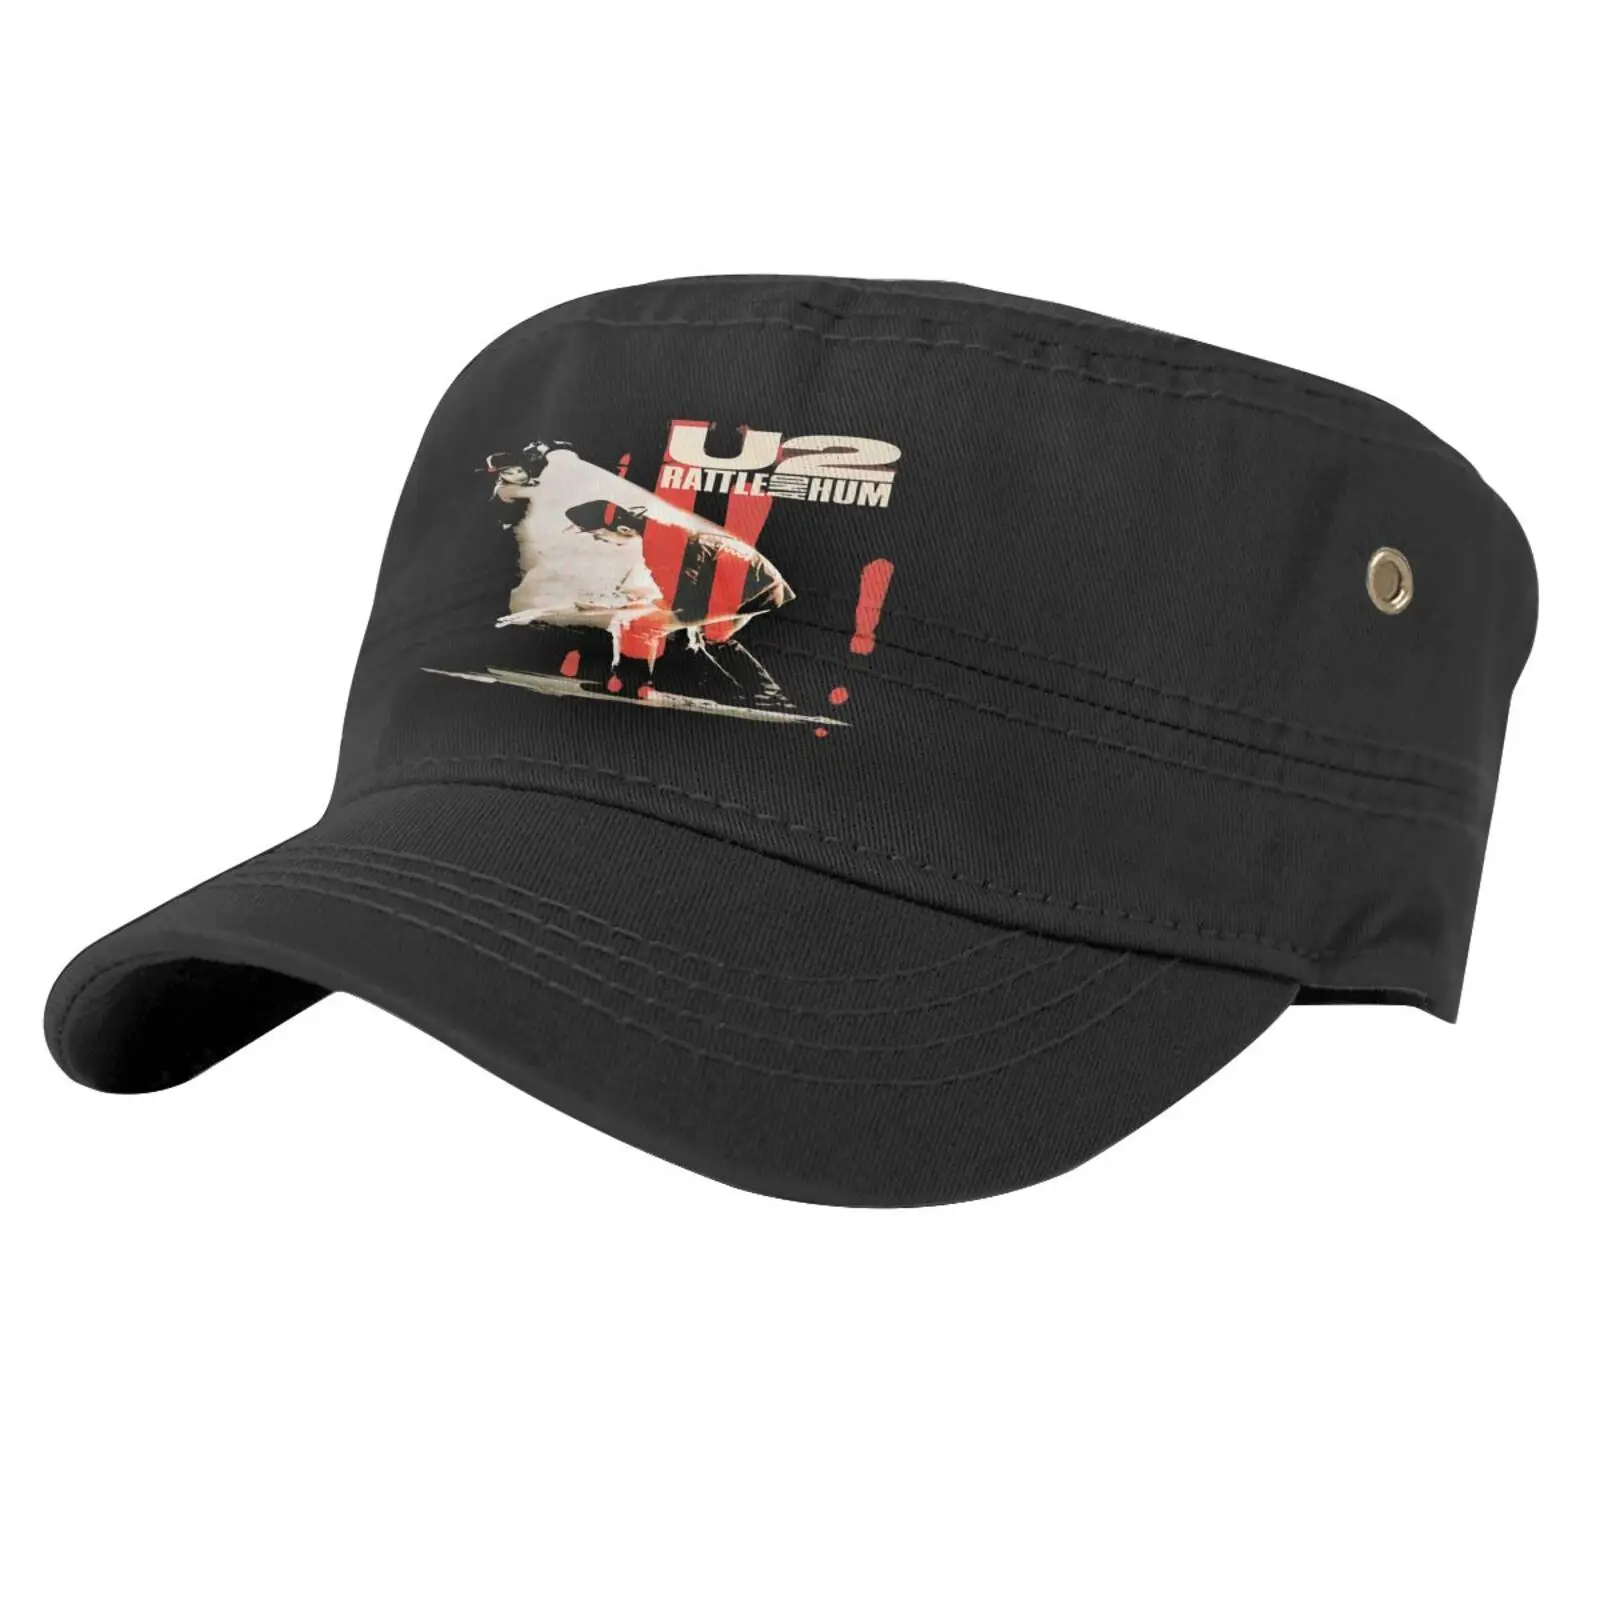 

U2 Bono Rattle And Hum 100 1562 Caps For Men Cap Male Cap For Men Golf Cap Satin Cap Cowboy Hats Designer Hat Cap Hip Hop Caps